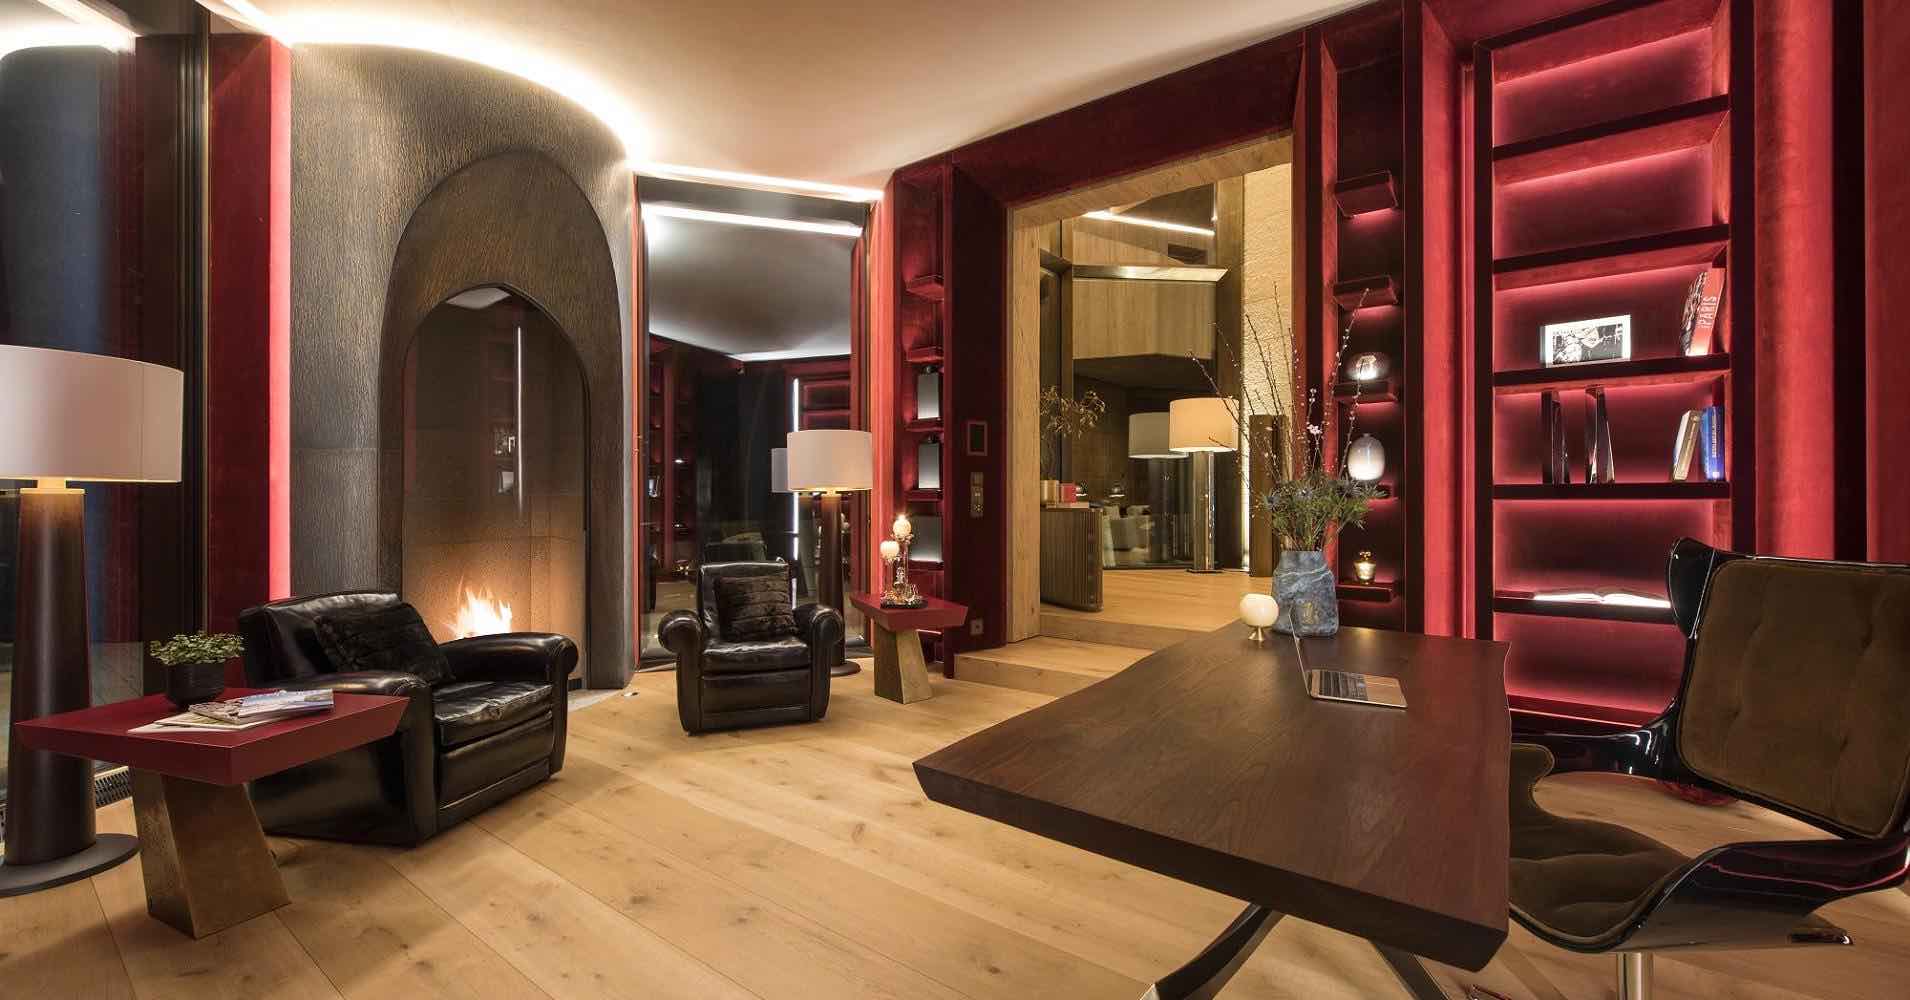 Está lujosa mega mansión es la más cara de St. Moritz, Suiza y ahora la puedes comprar por $185 millones